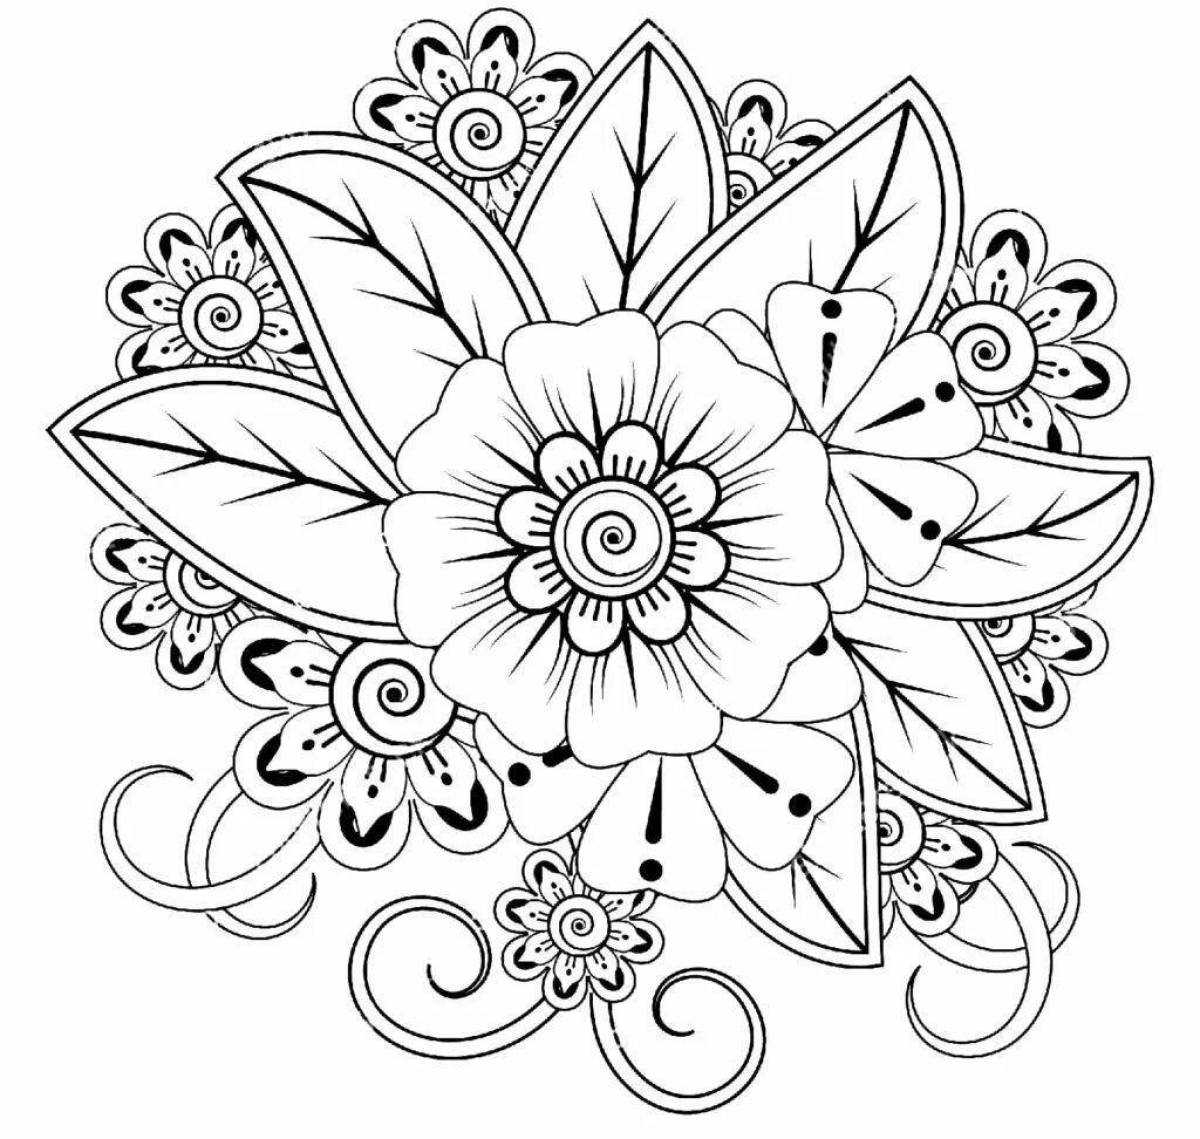 Dazzling flower mandala coloring book